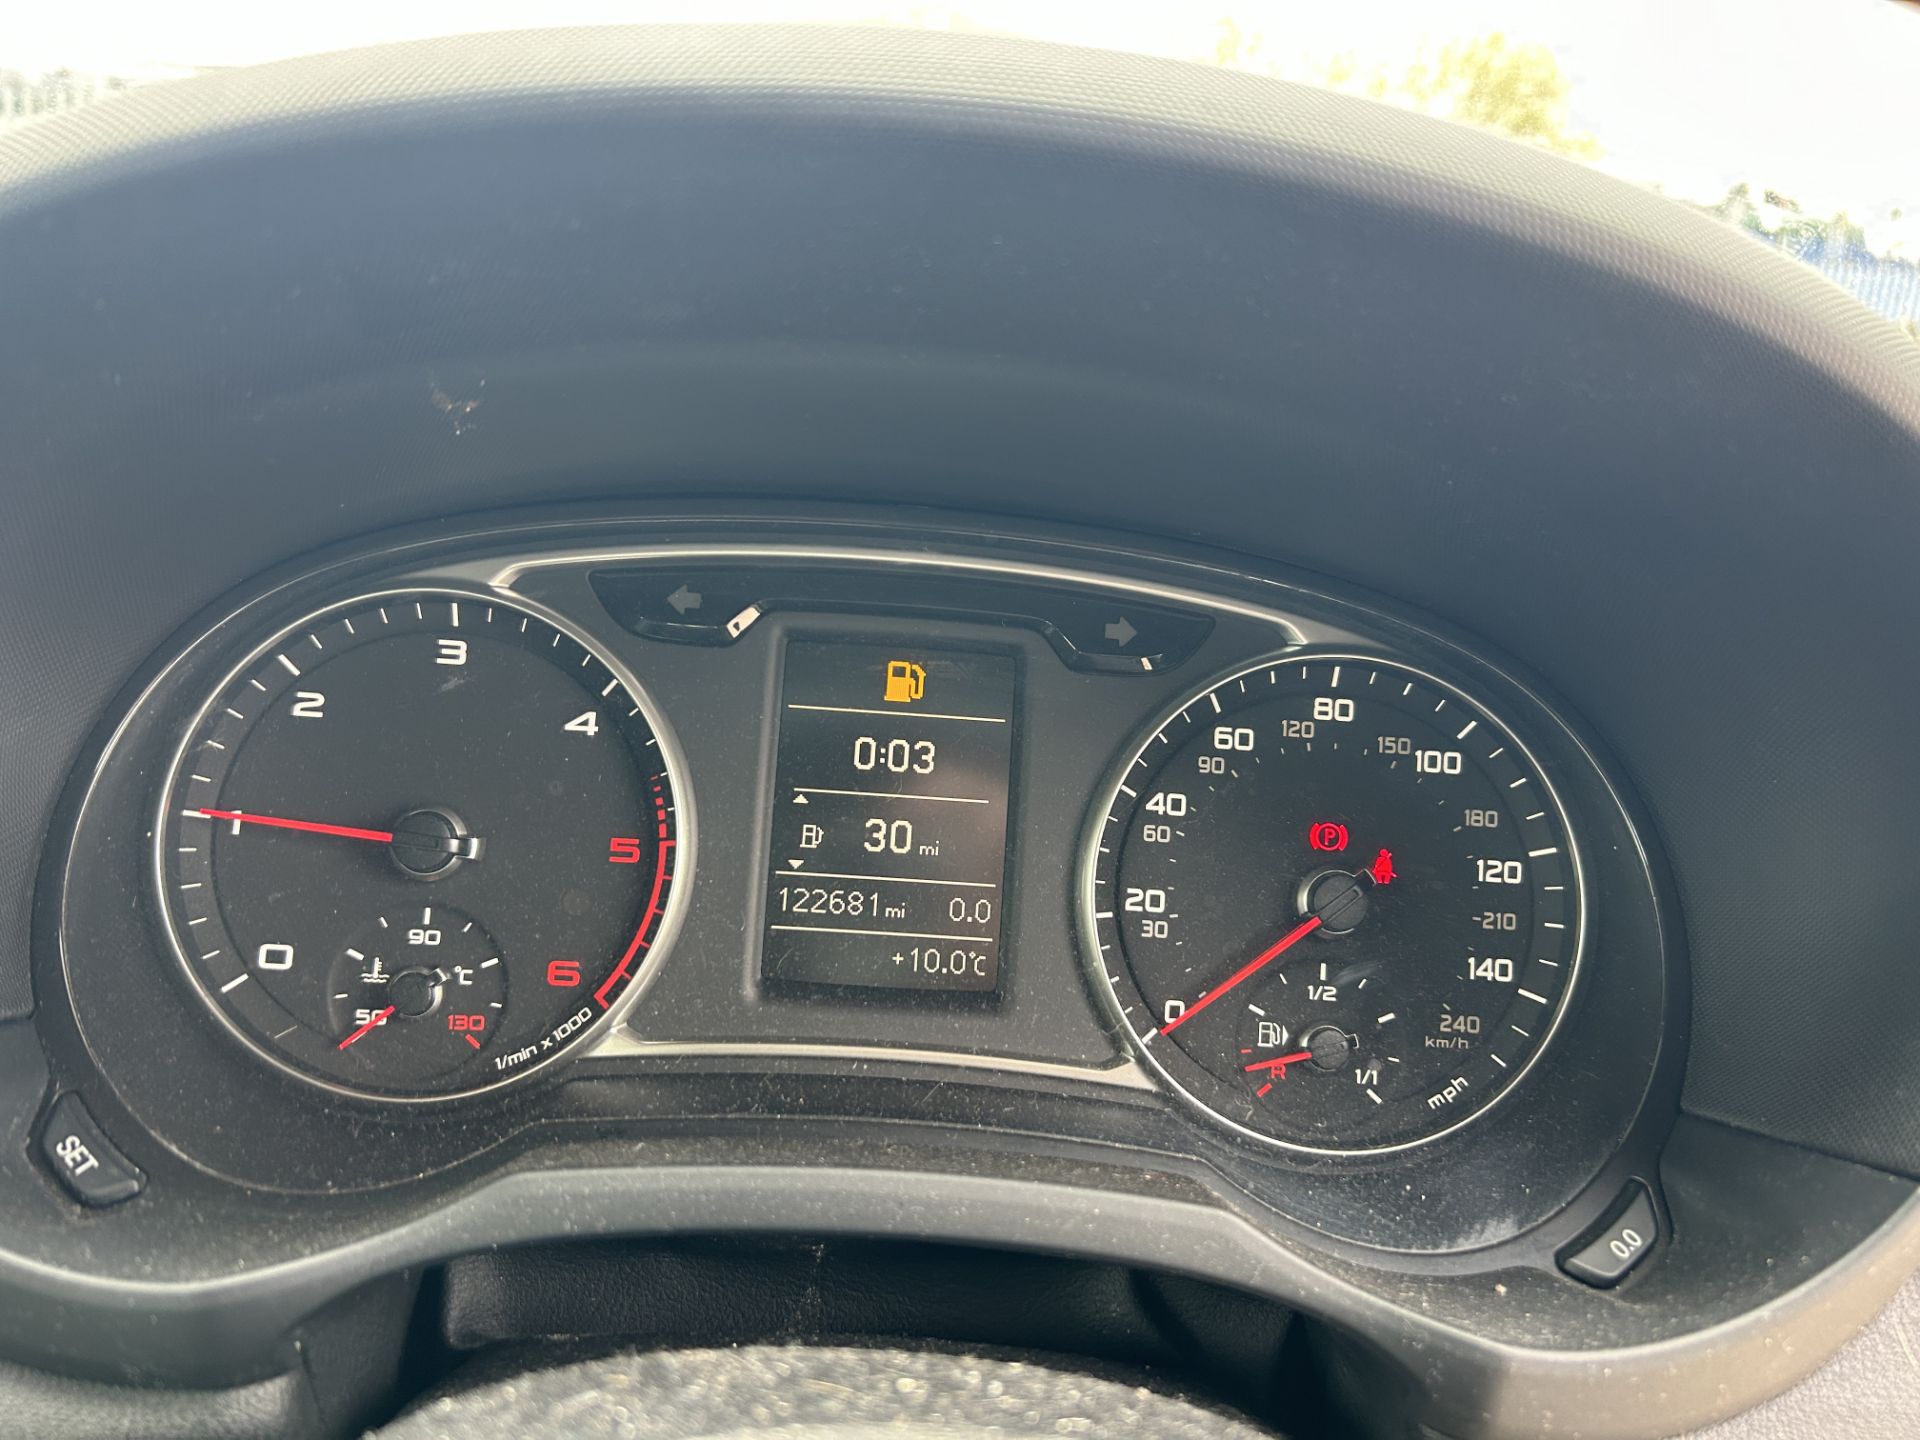 Audi A1 Sport TDI Diesel 3 Door Hatchback | WG61 USJ | 122,681 Miles - Image 15 of 15